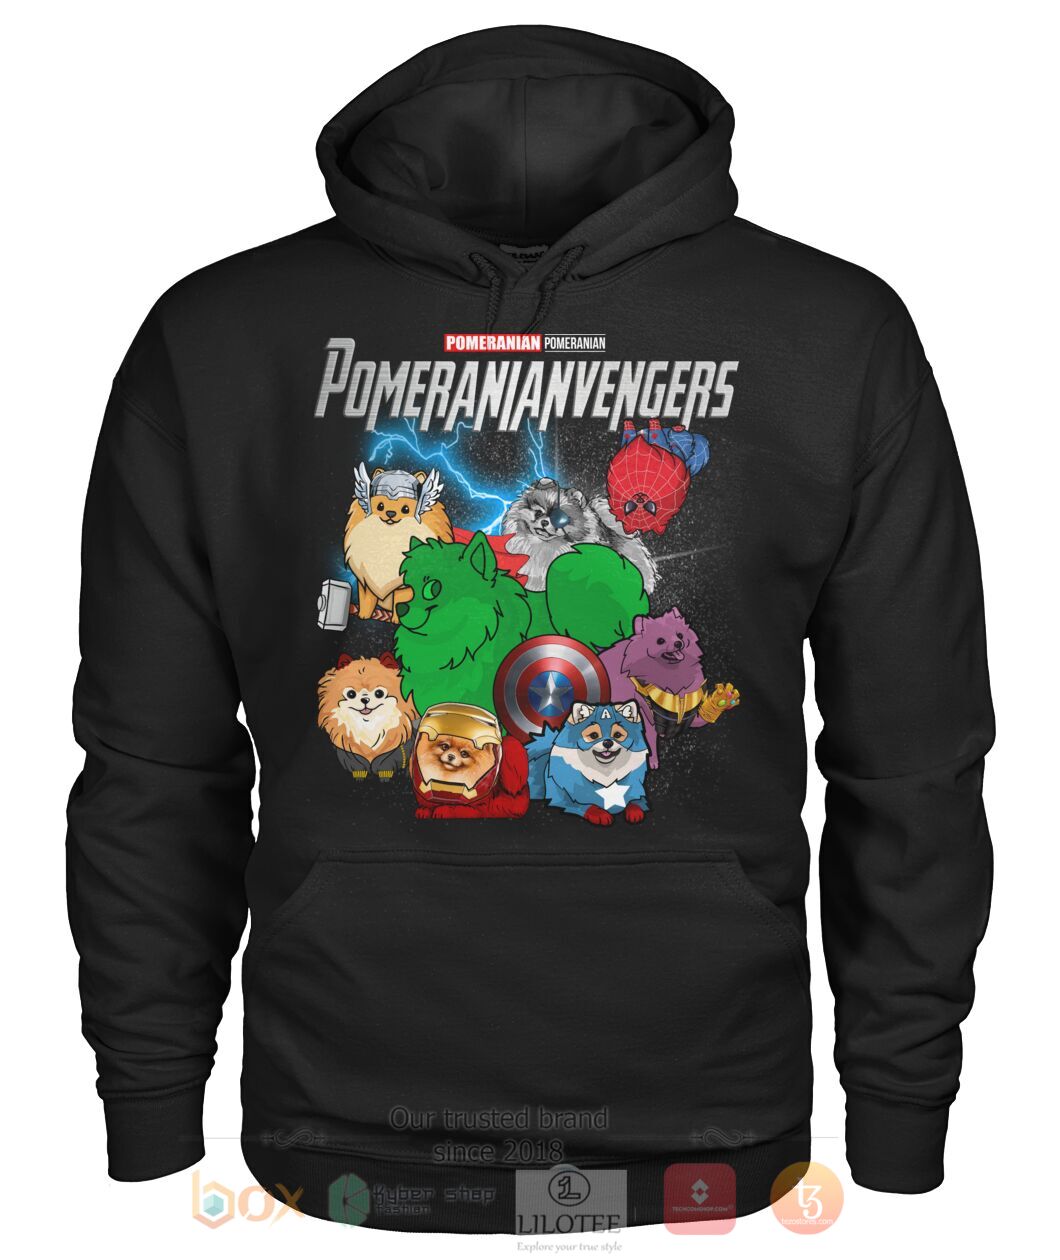 Pomeranianvengers 3D Hoodie Shirt 1